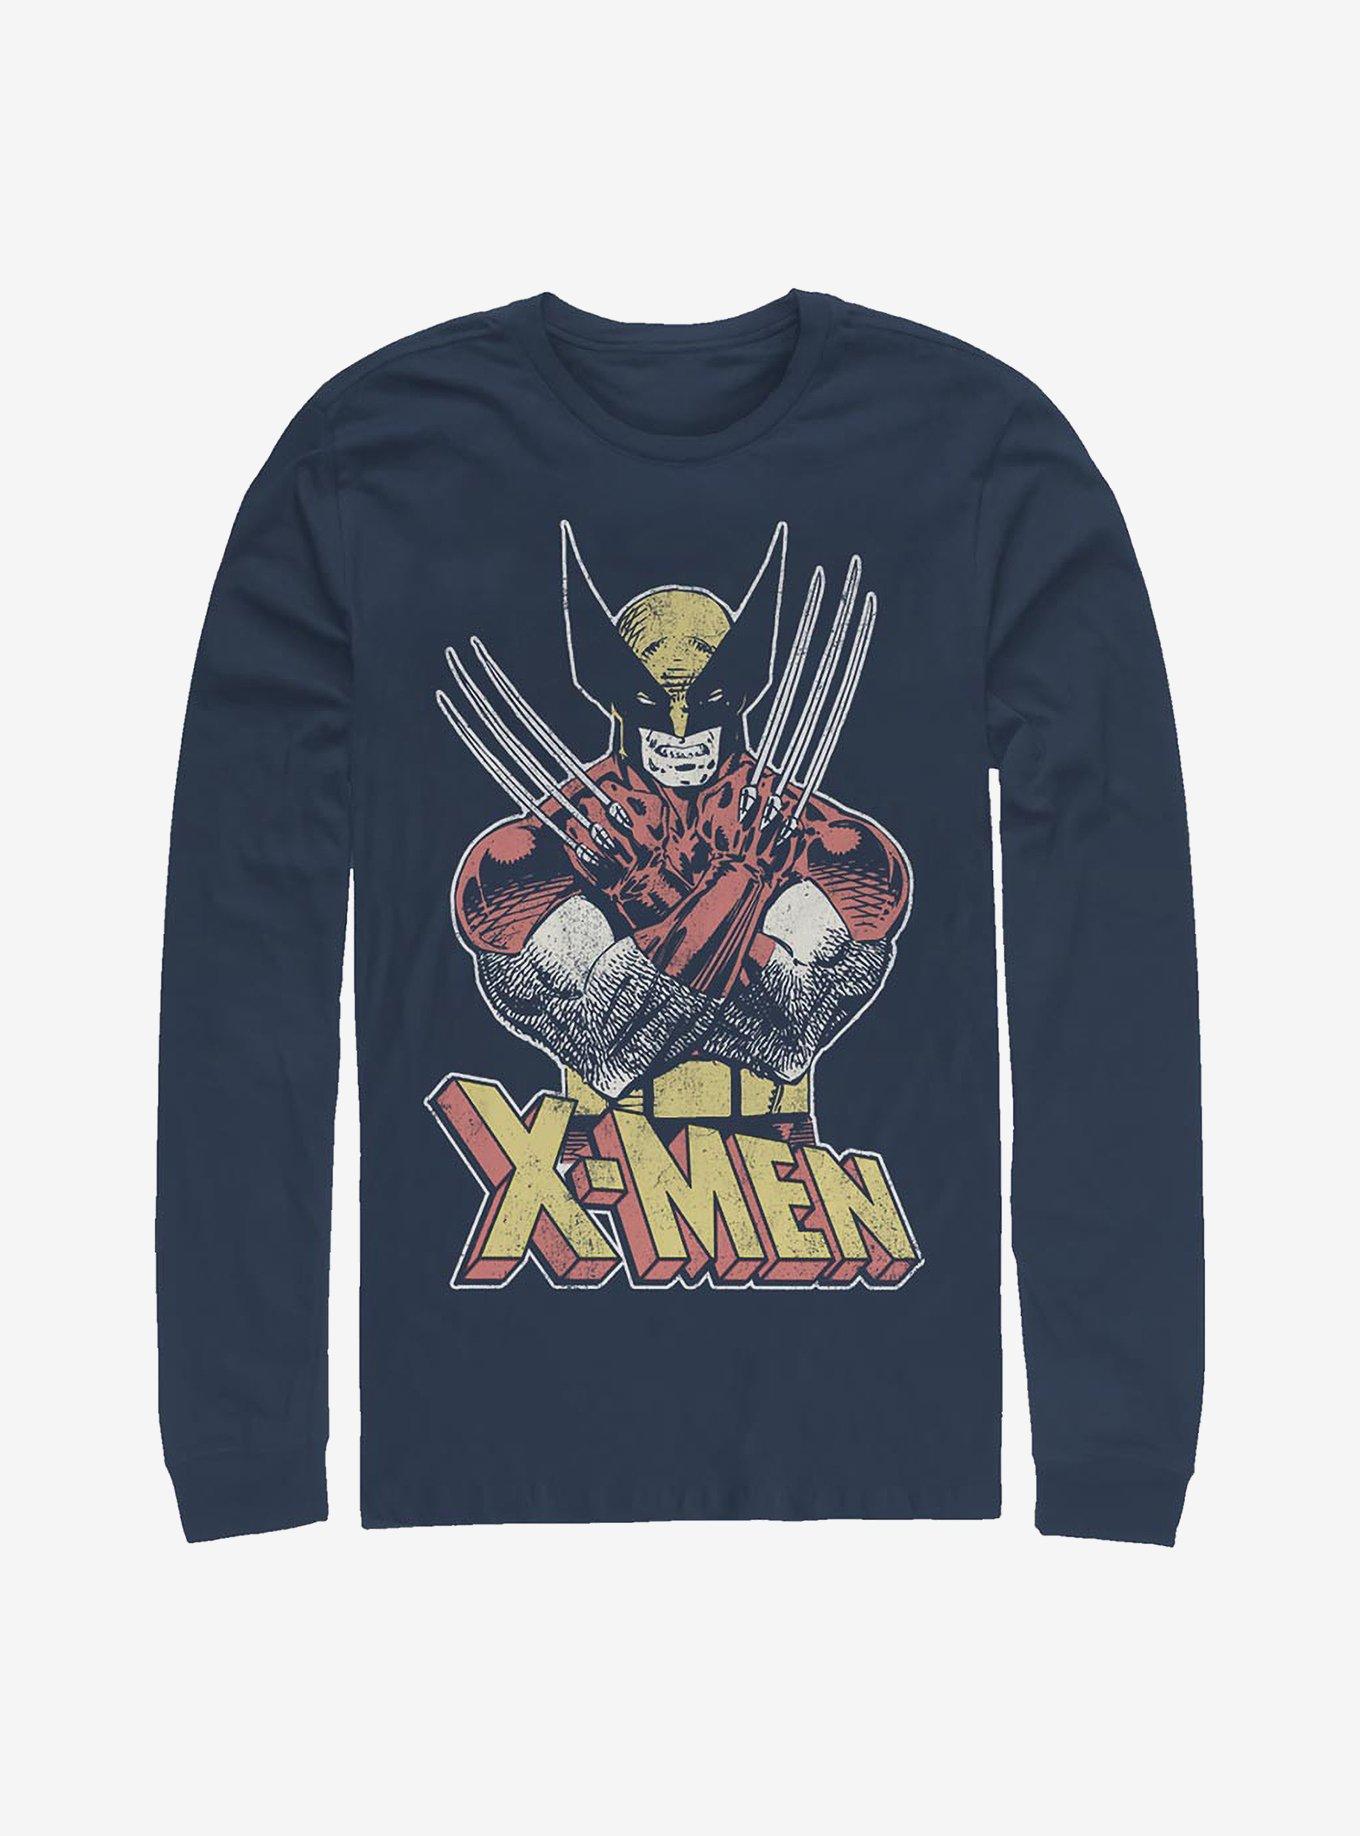 Marvel X-Men Vintage Wolverine Long-Sleeve T-Shirt, NAVY, hi-res